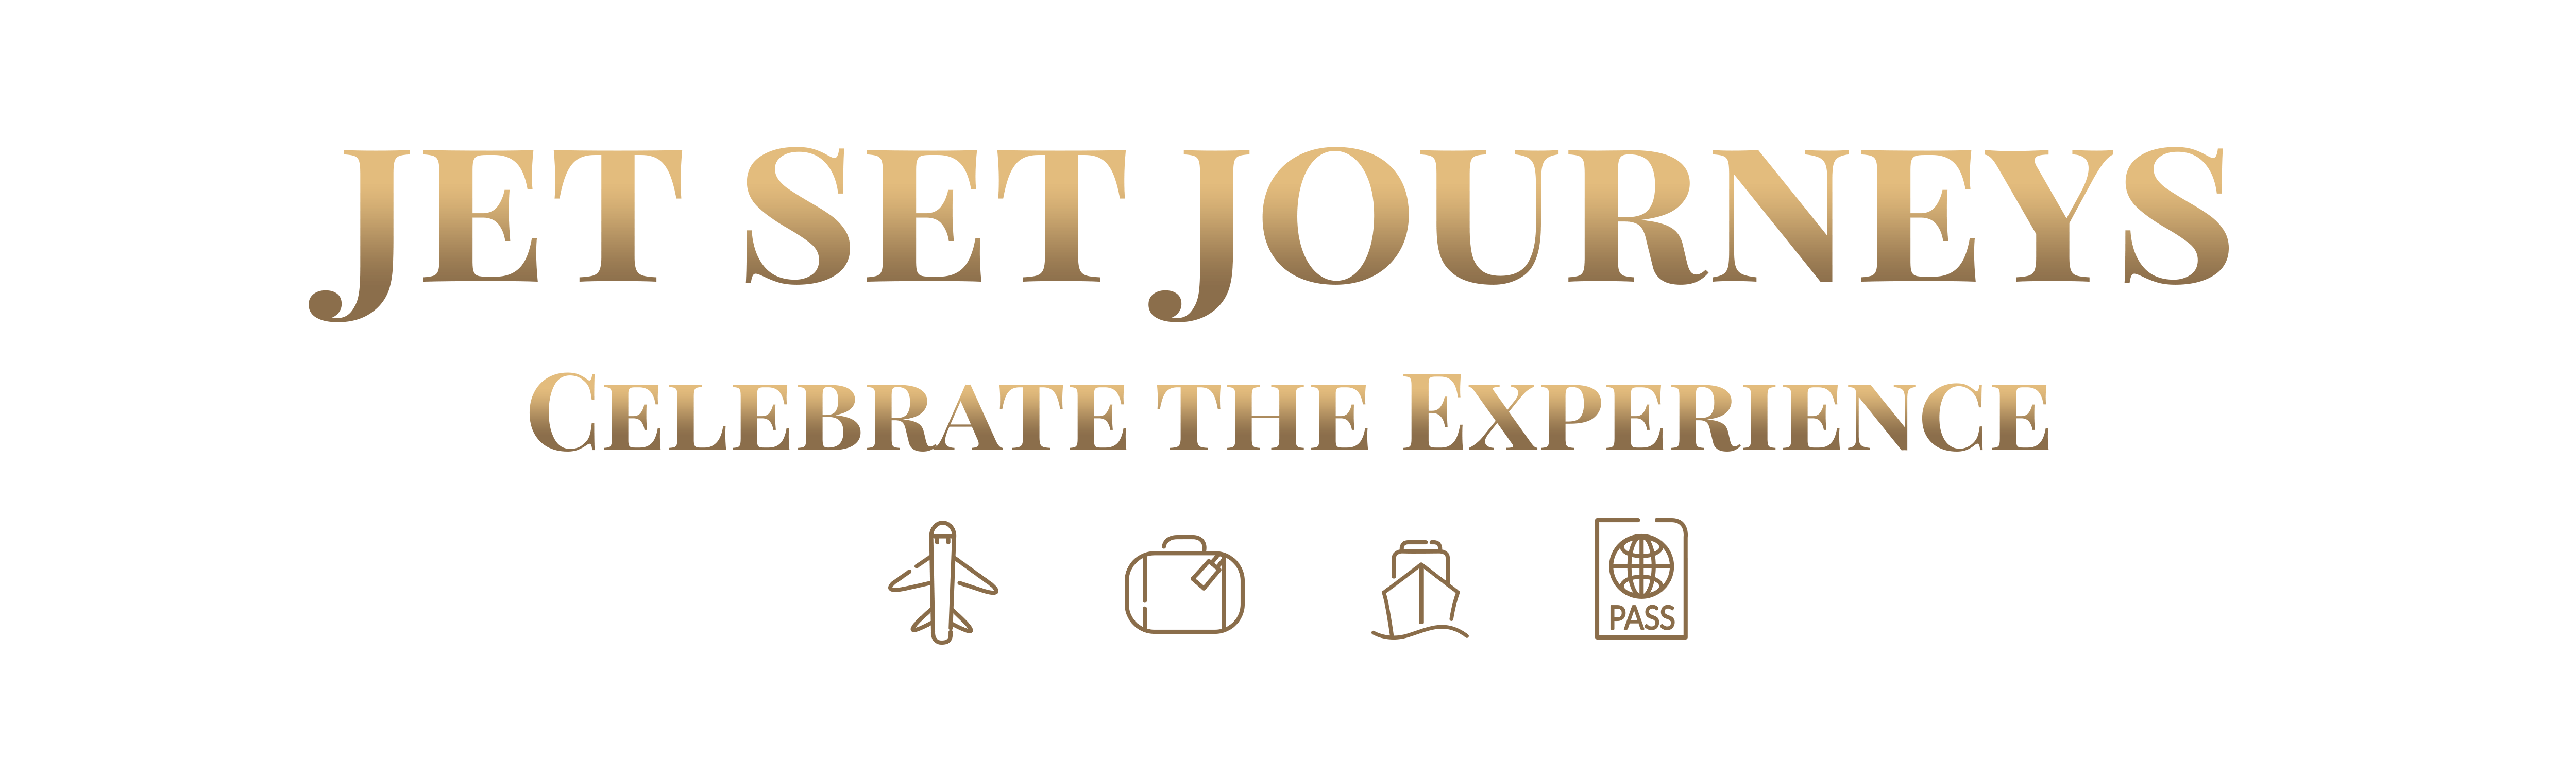 jetSetJourneys - logo-2 (1)